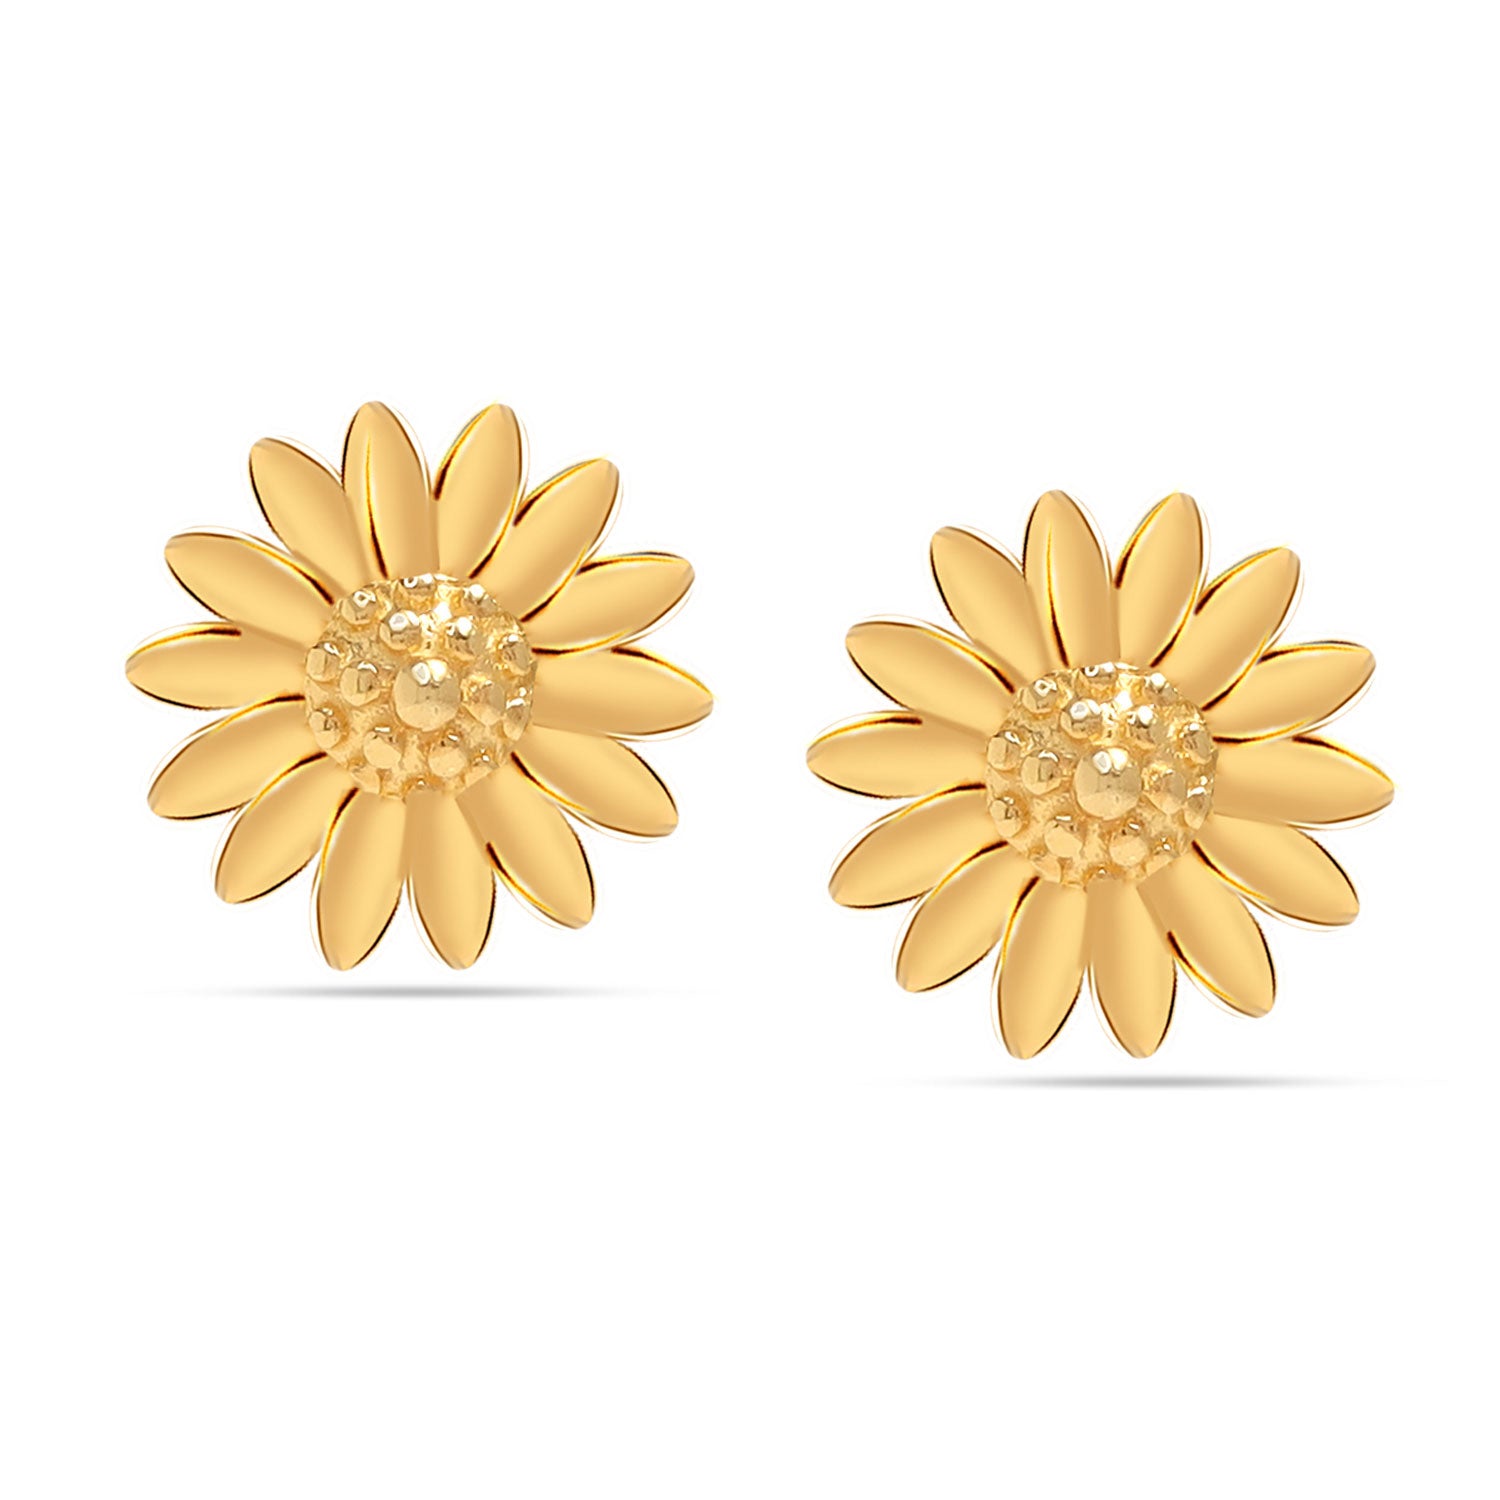 925 Sterling Silver 14K Gold Plated Small Flower Sunflower Design Stud Earrings for Women Teen